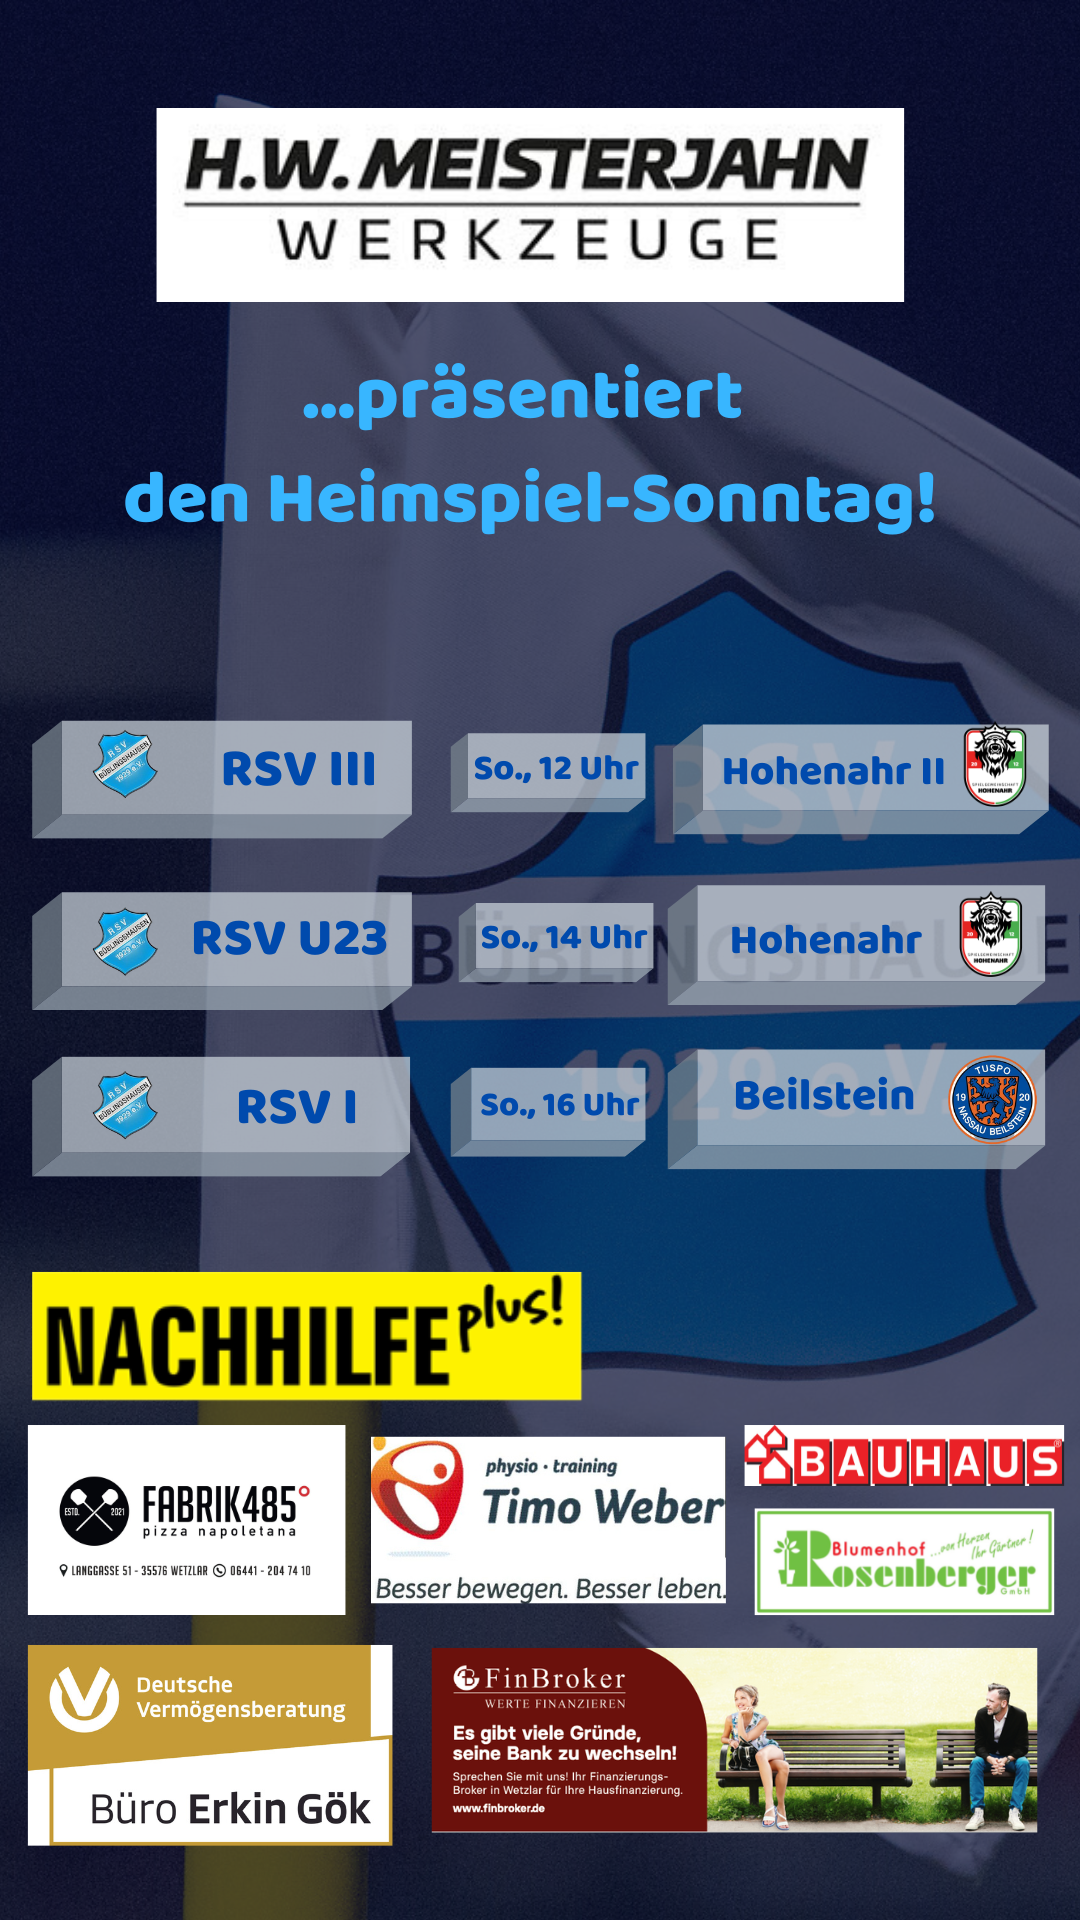 You are currently viewing Heimspiel-Sonntag: Alle drei RSV-Teams gefordert